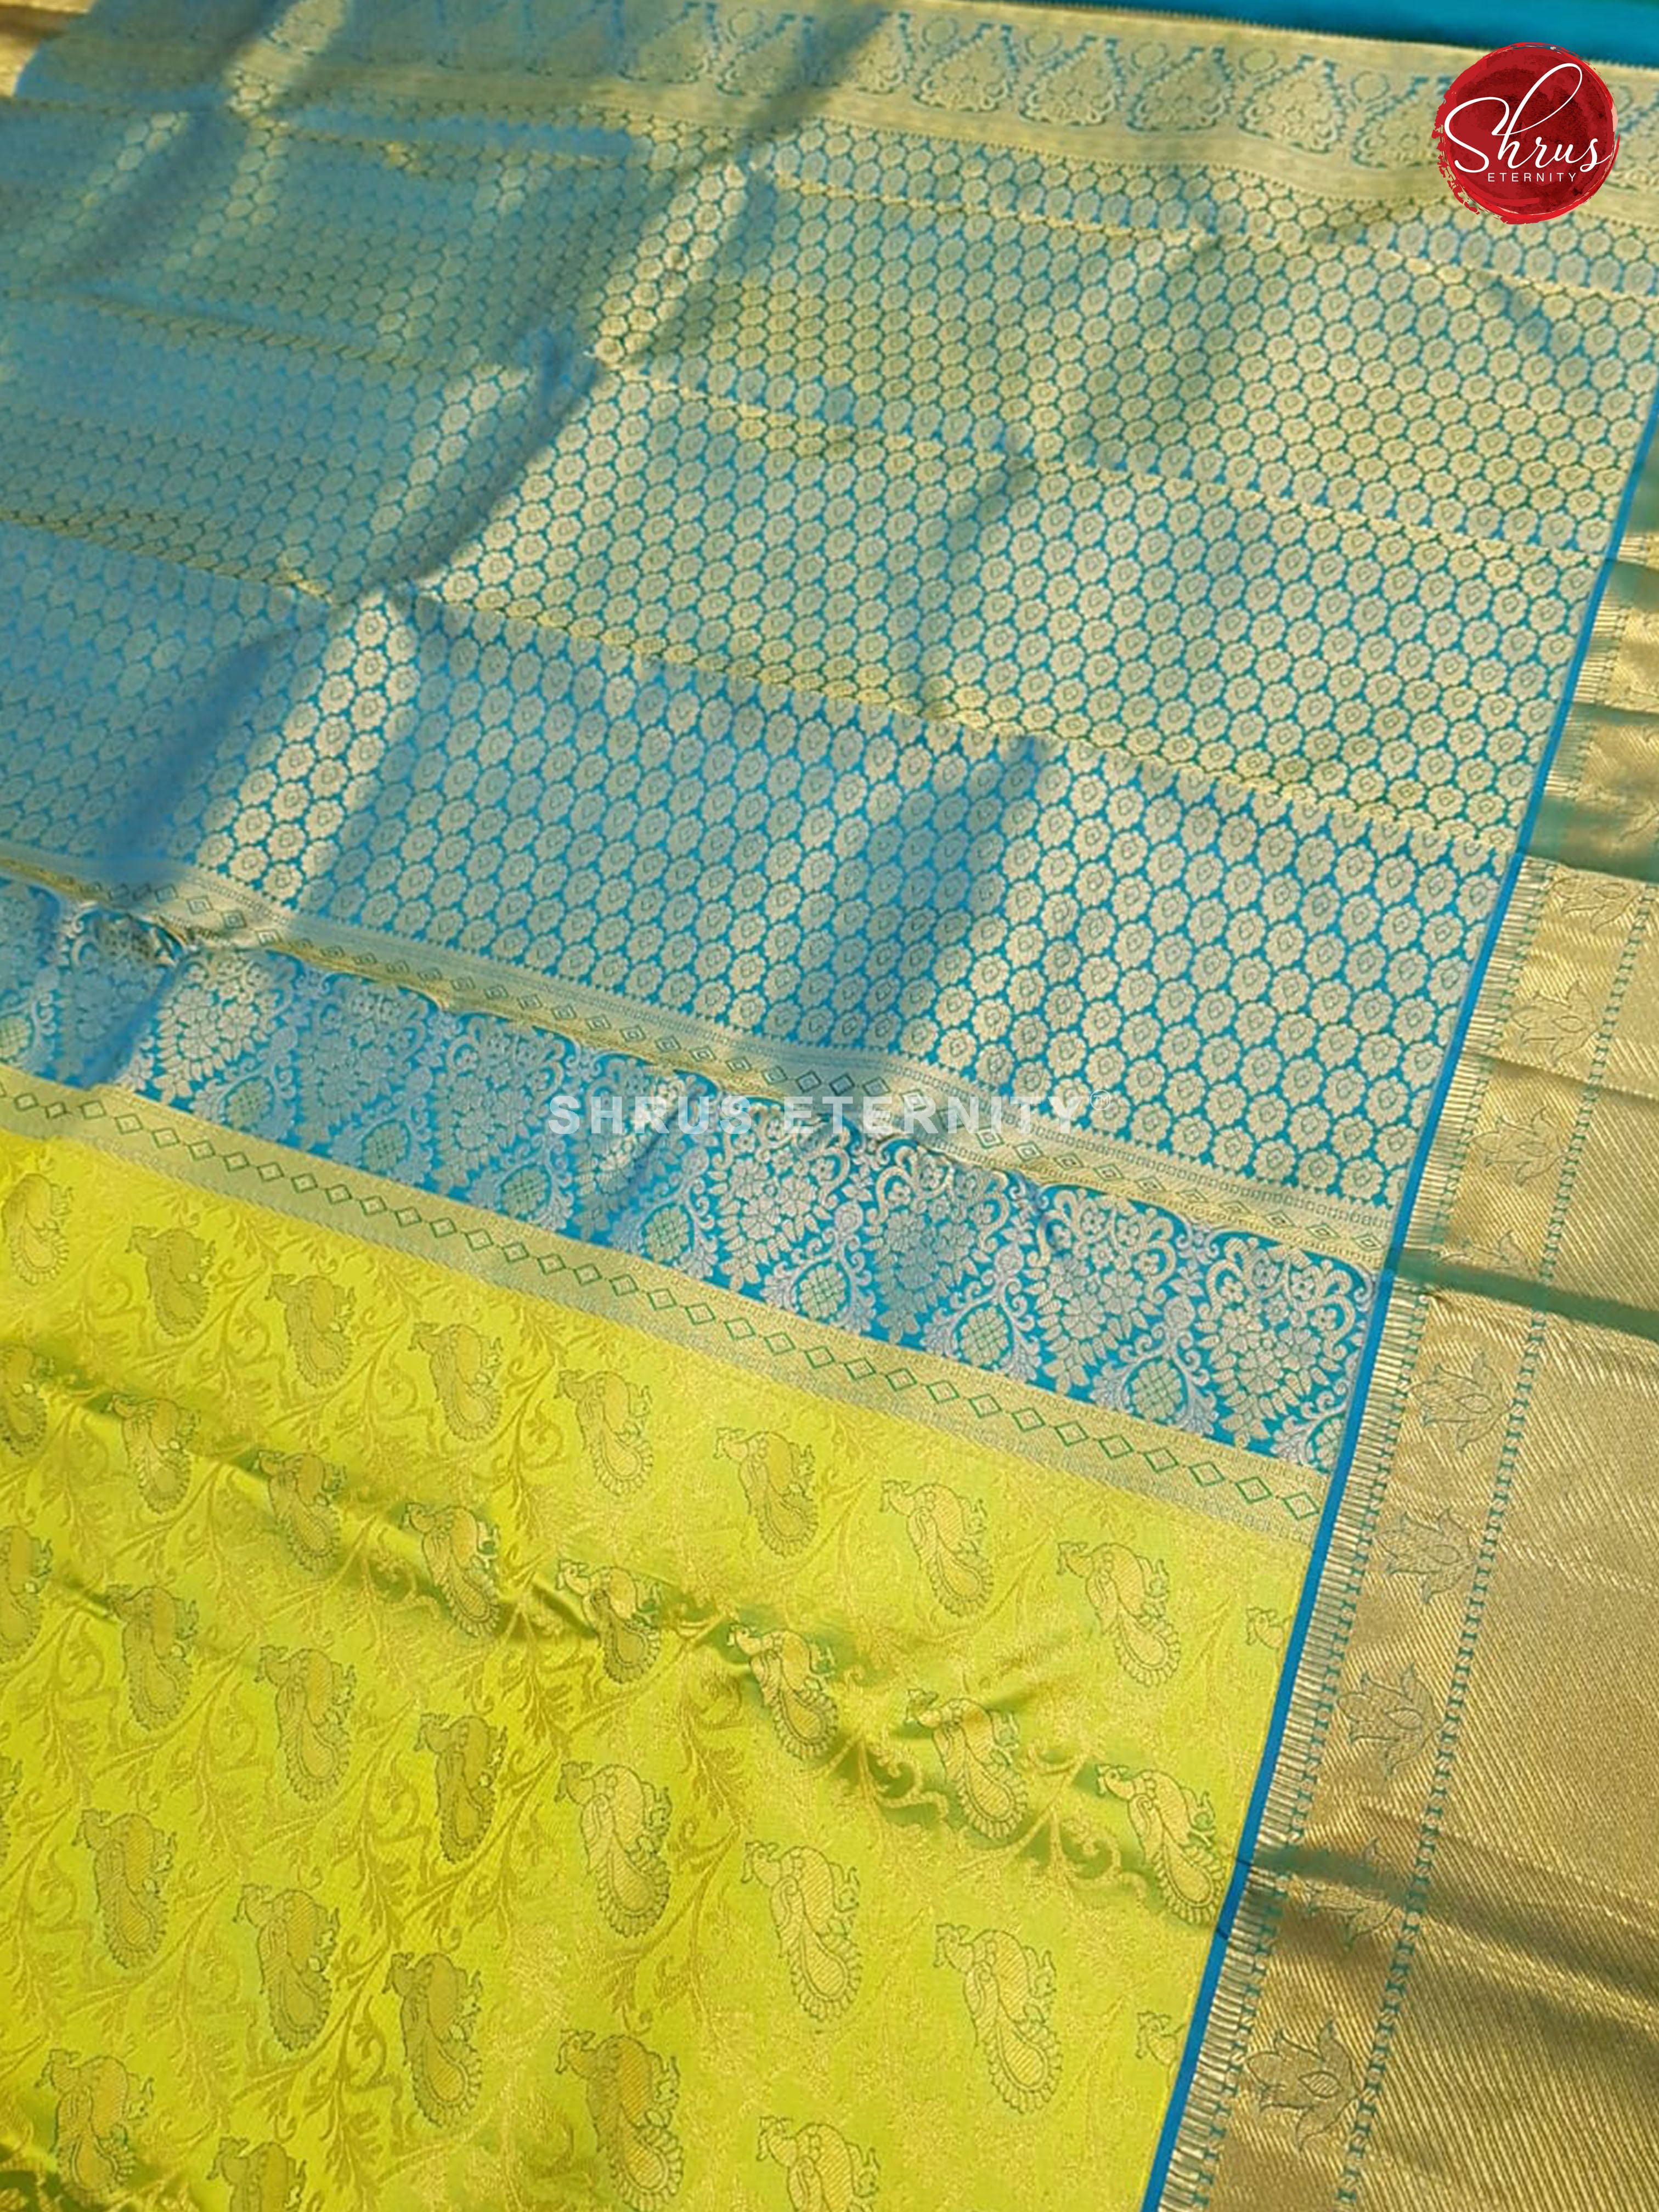 Green &  Blue - Kanchipuram Silks - Shop on ShrusEternity.com